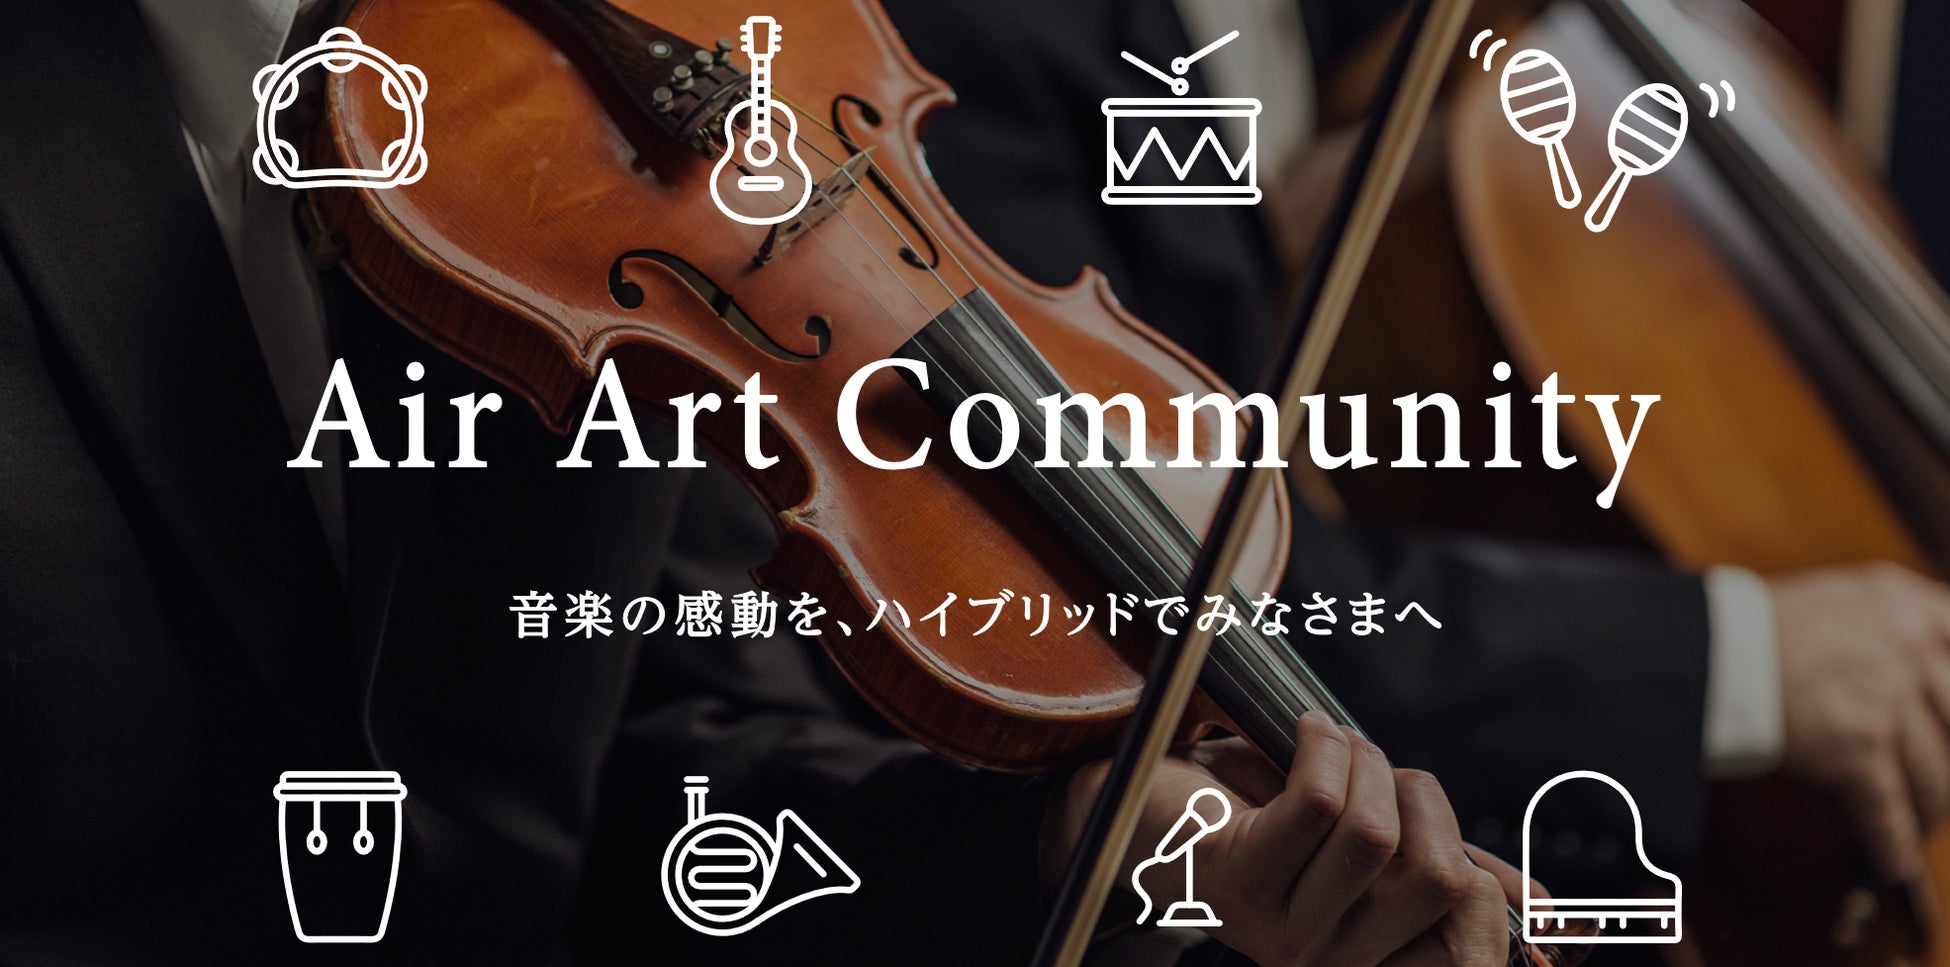 音楽イベント プラットフォーム「Air Art Community」　　　　　　　　　　　　　　　　　8月1日スタート！